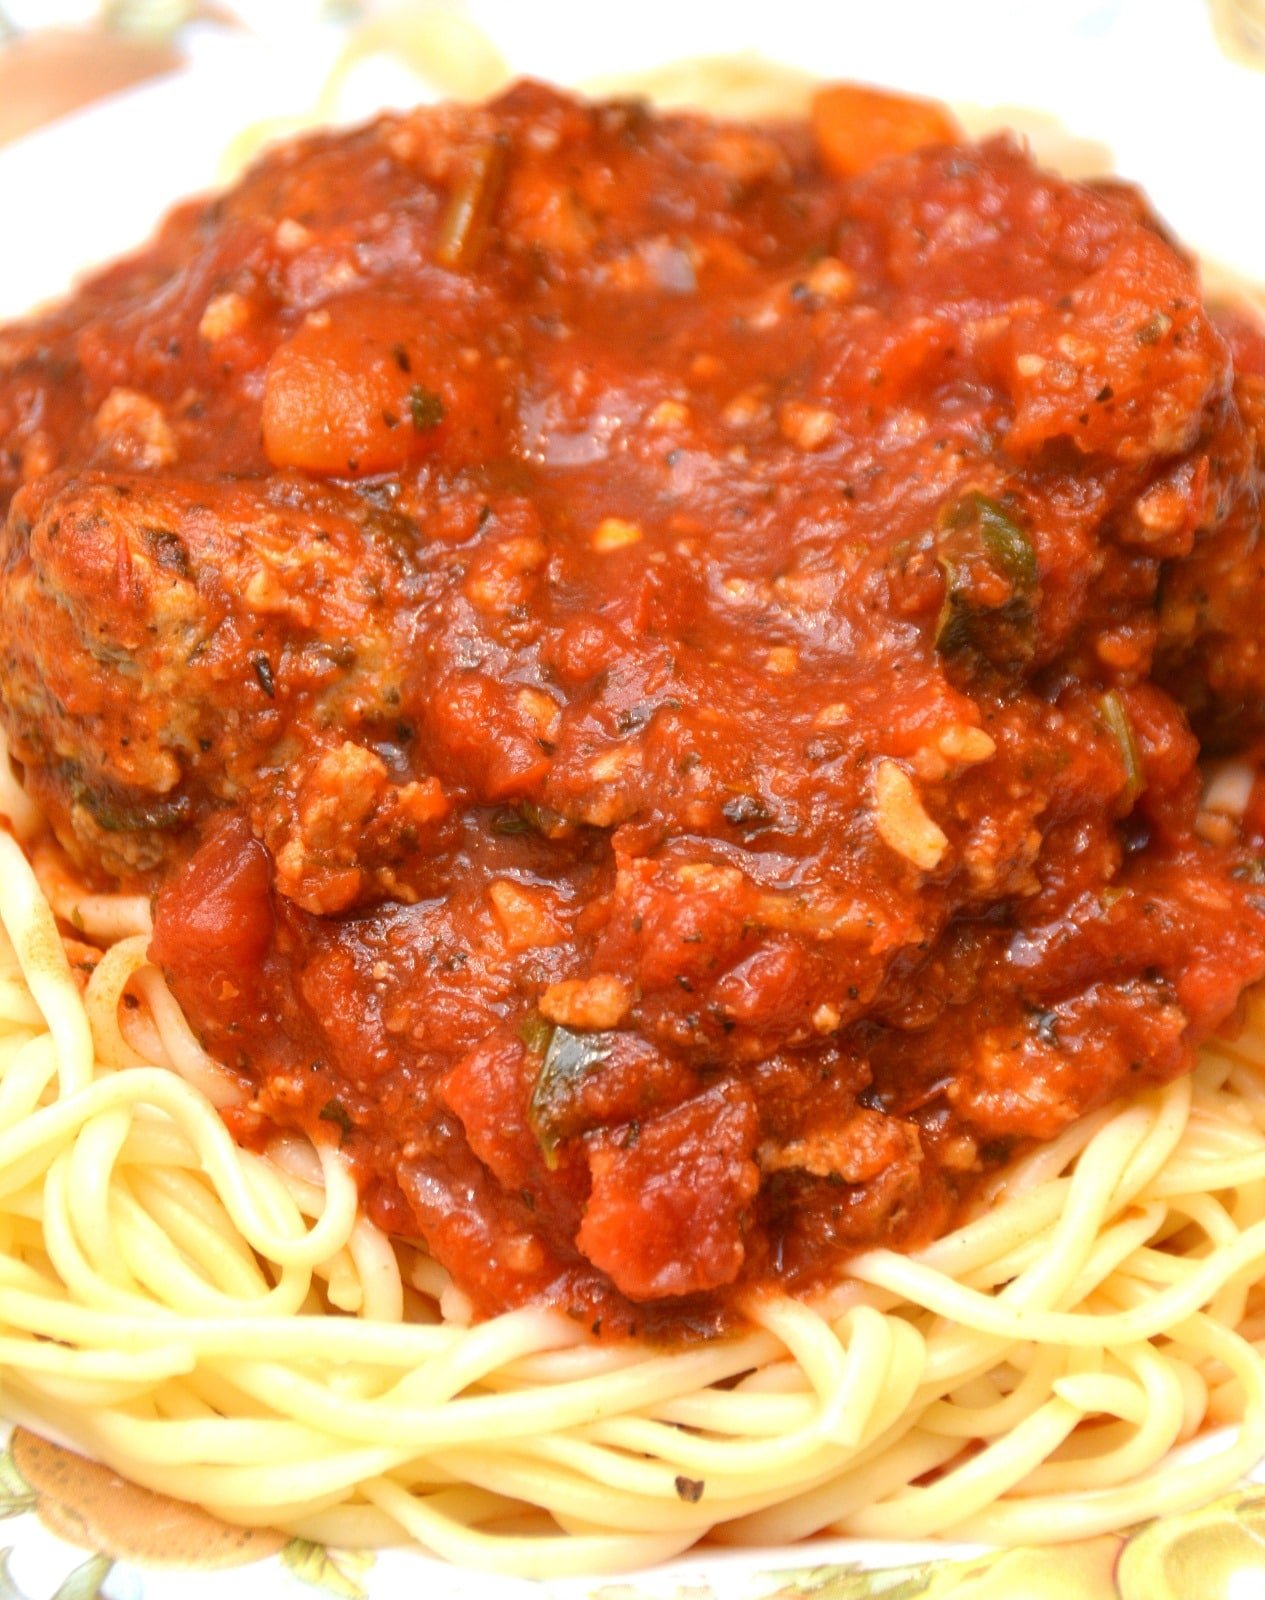 Spaghetti and meatballs recipe